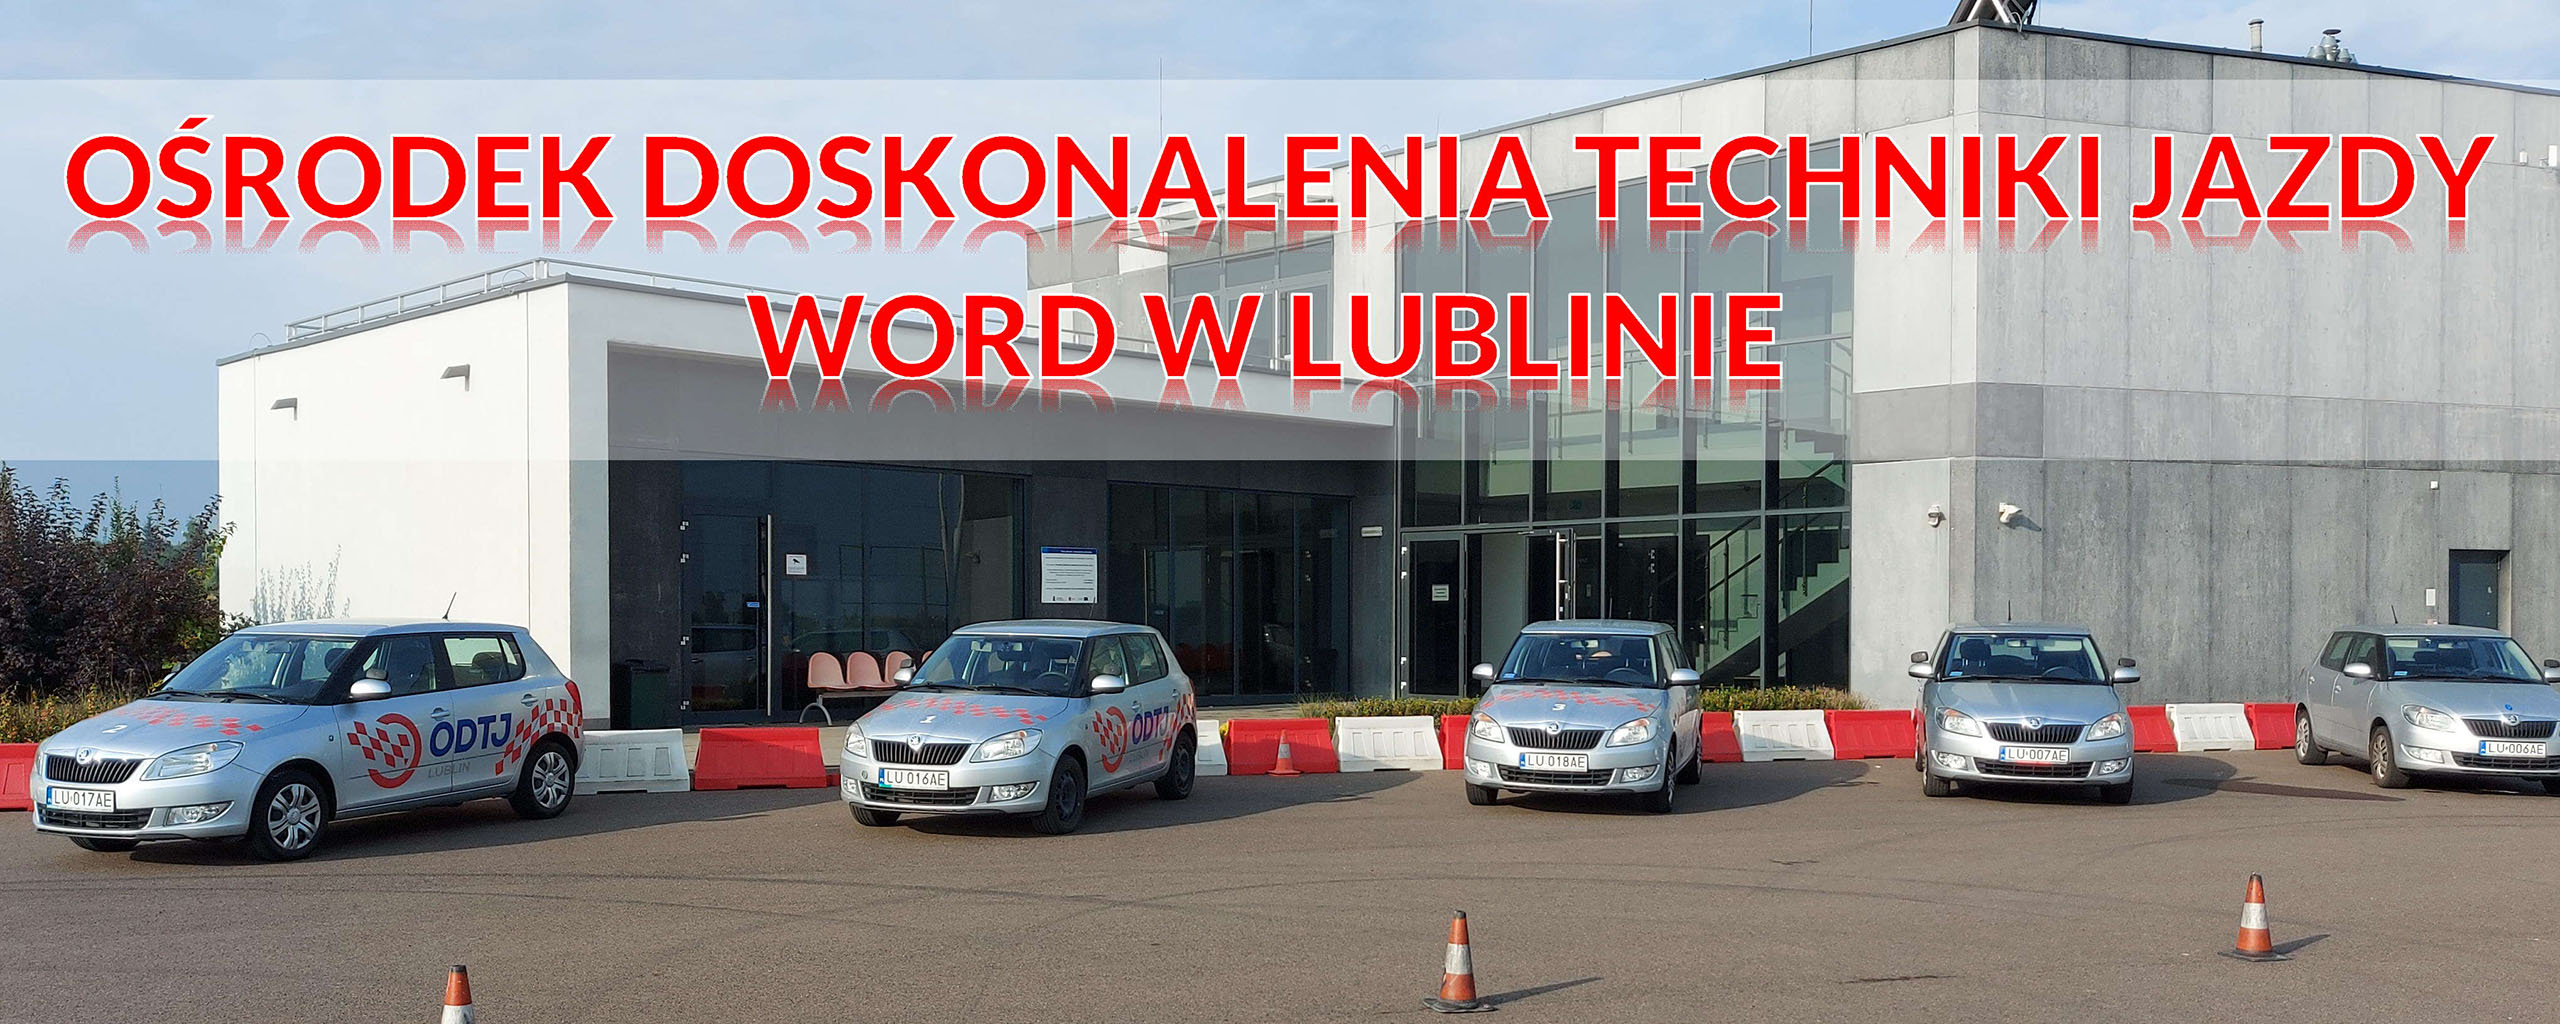 Ośrodek Doskonalenia Techniki Jazdy WORD w Lublinie